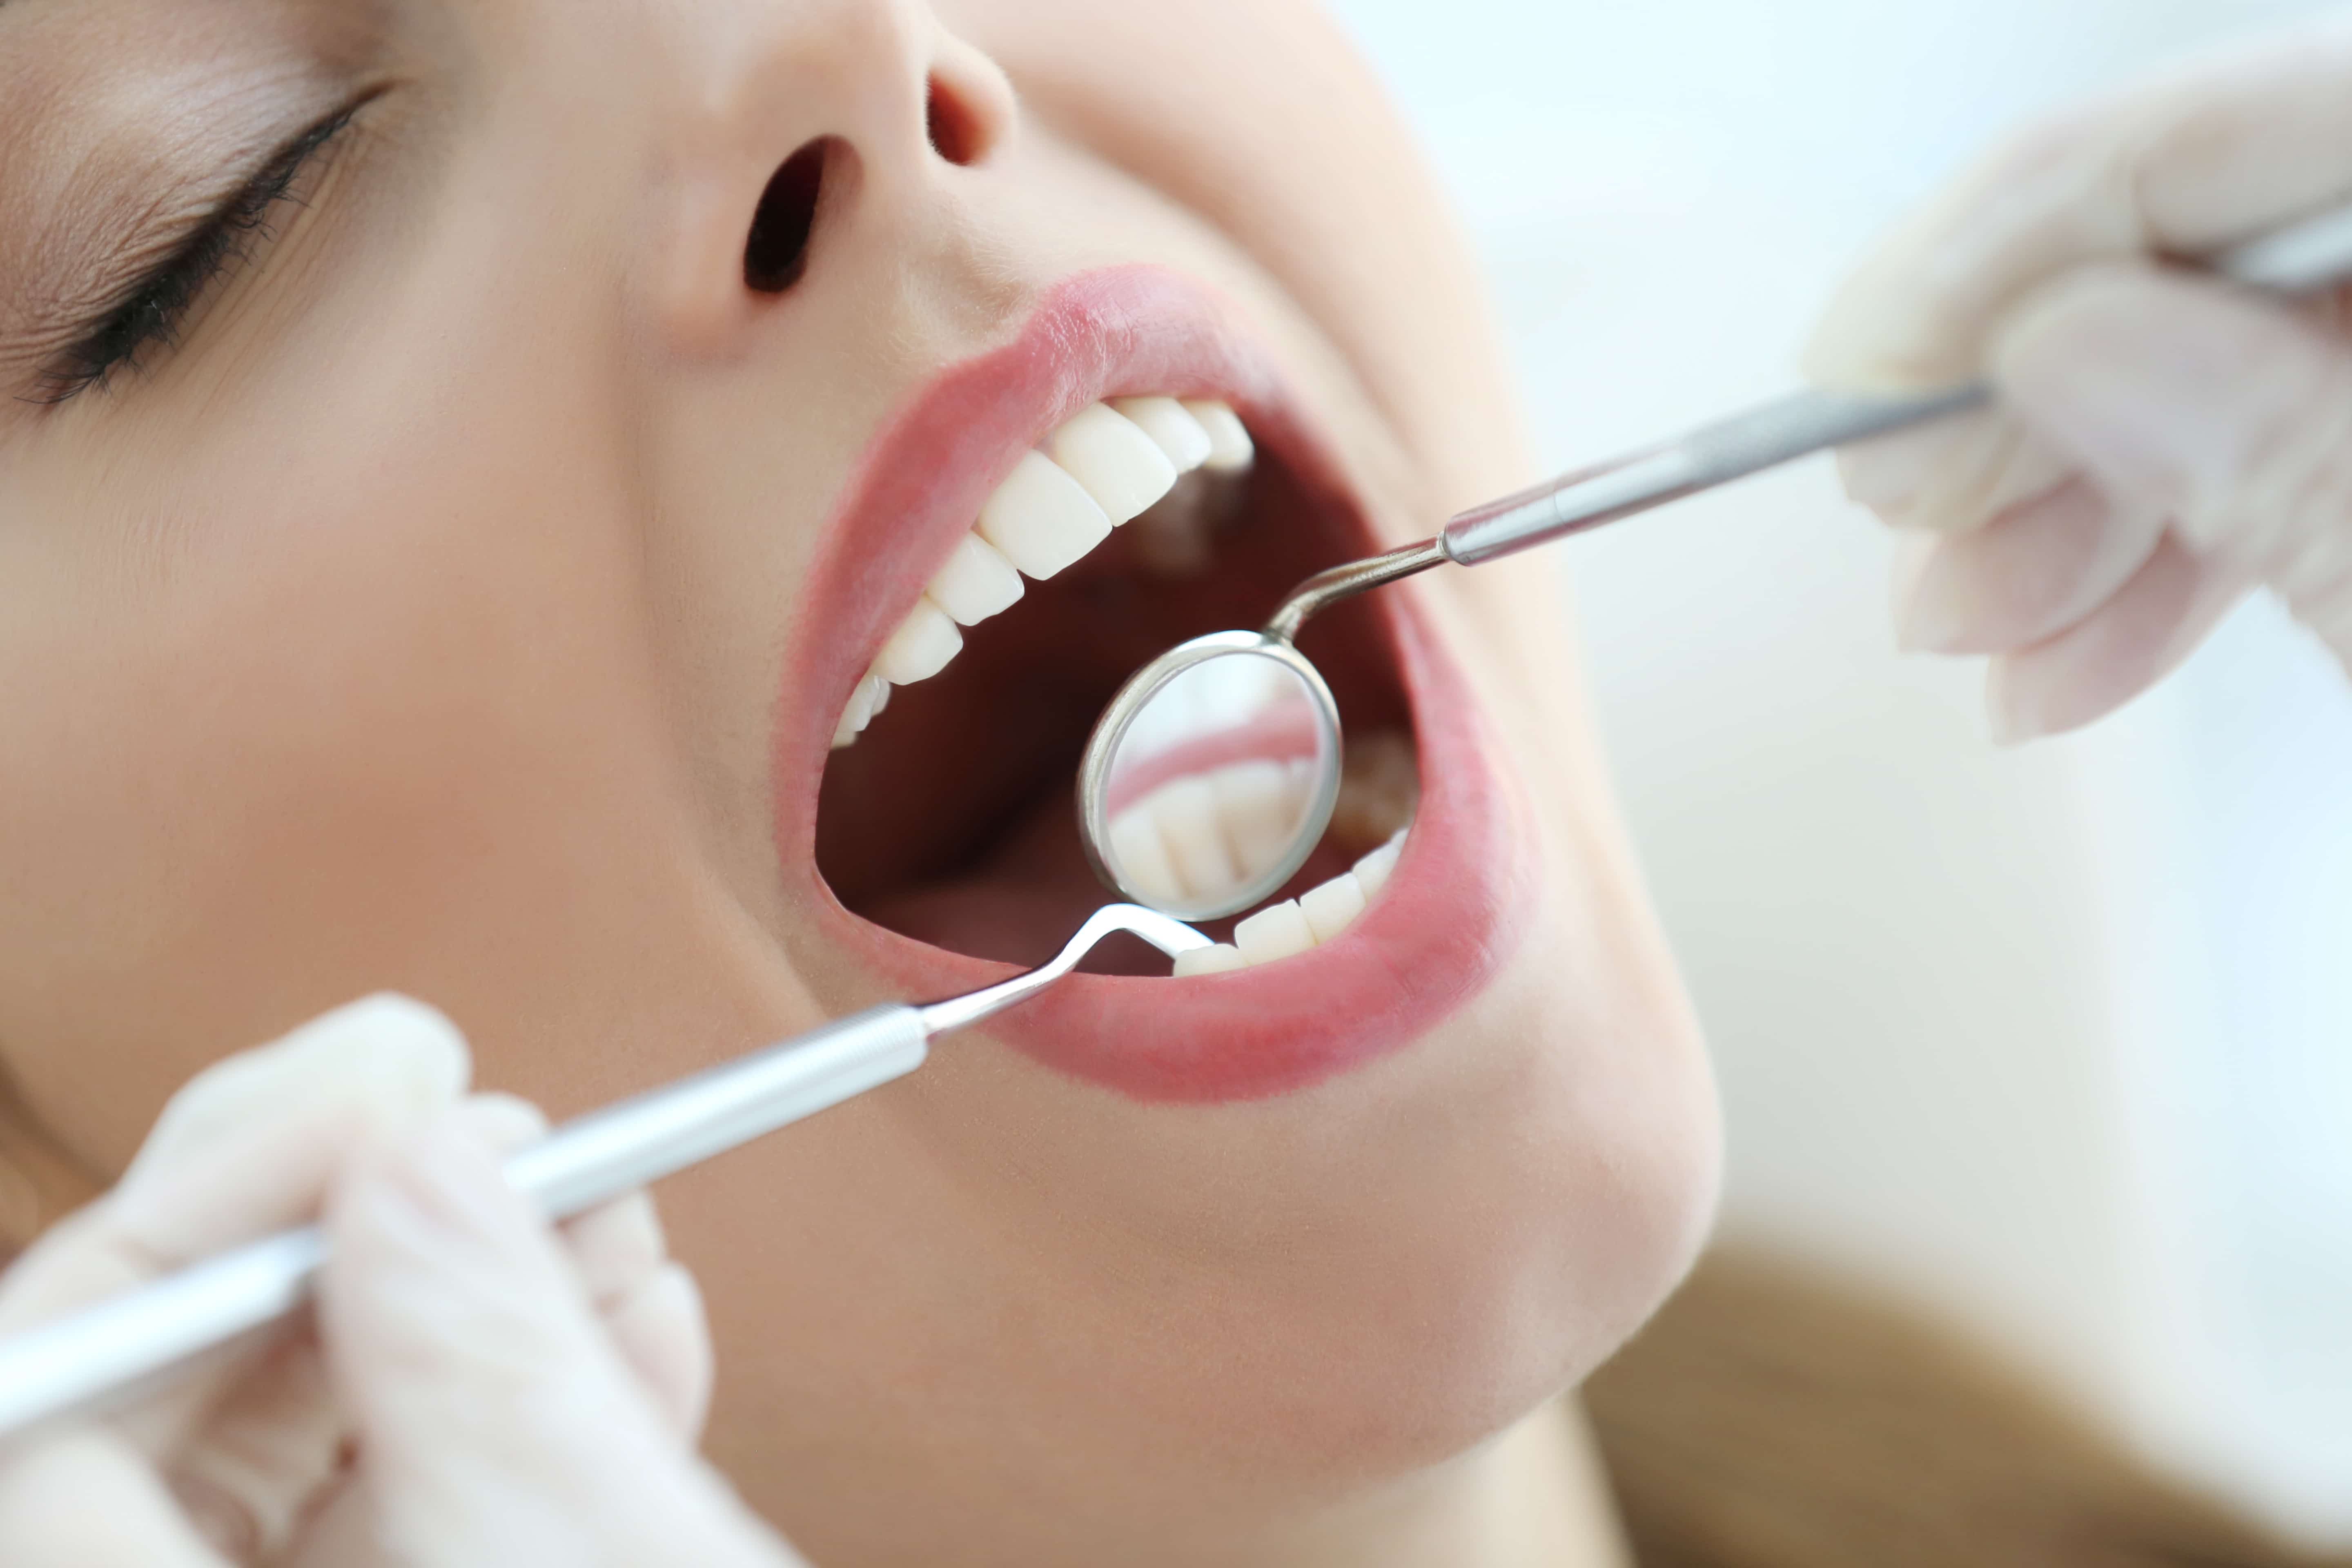 Полость рта для стоматолога. Осмотр стоматолога. Осмотр зубов у стоматолога. Профессиональная гигиена полости рта. Осмотр полости рта у стоматолога.